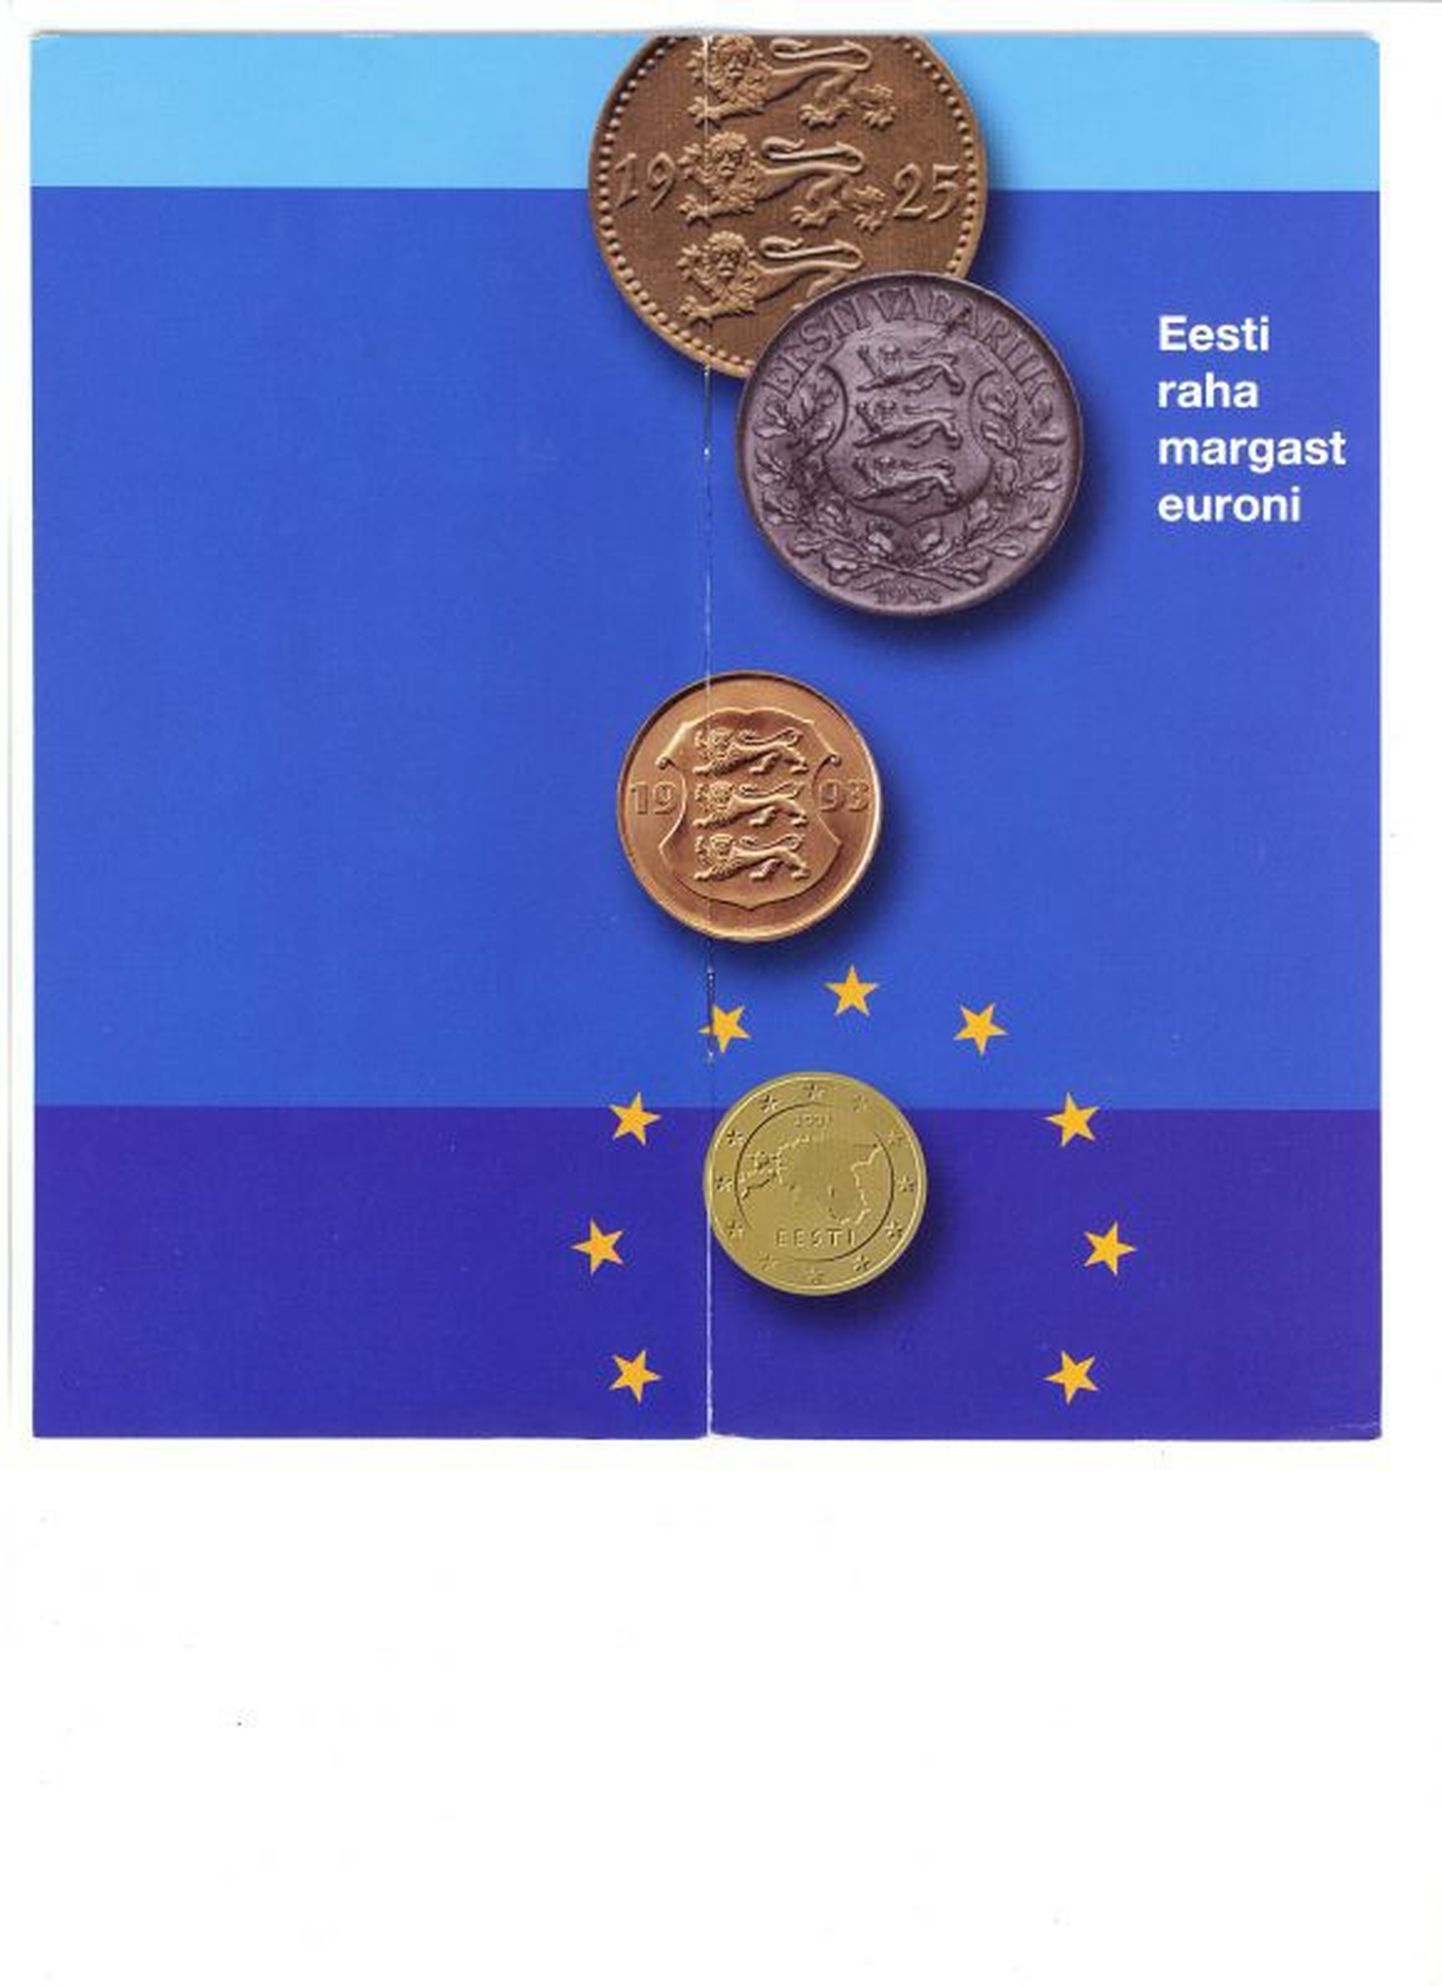 Eesti raha margast euroni.